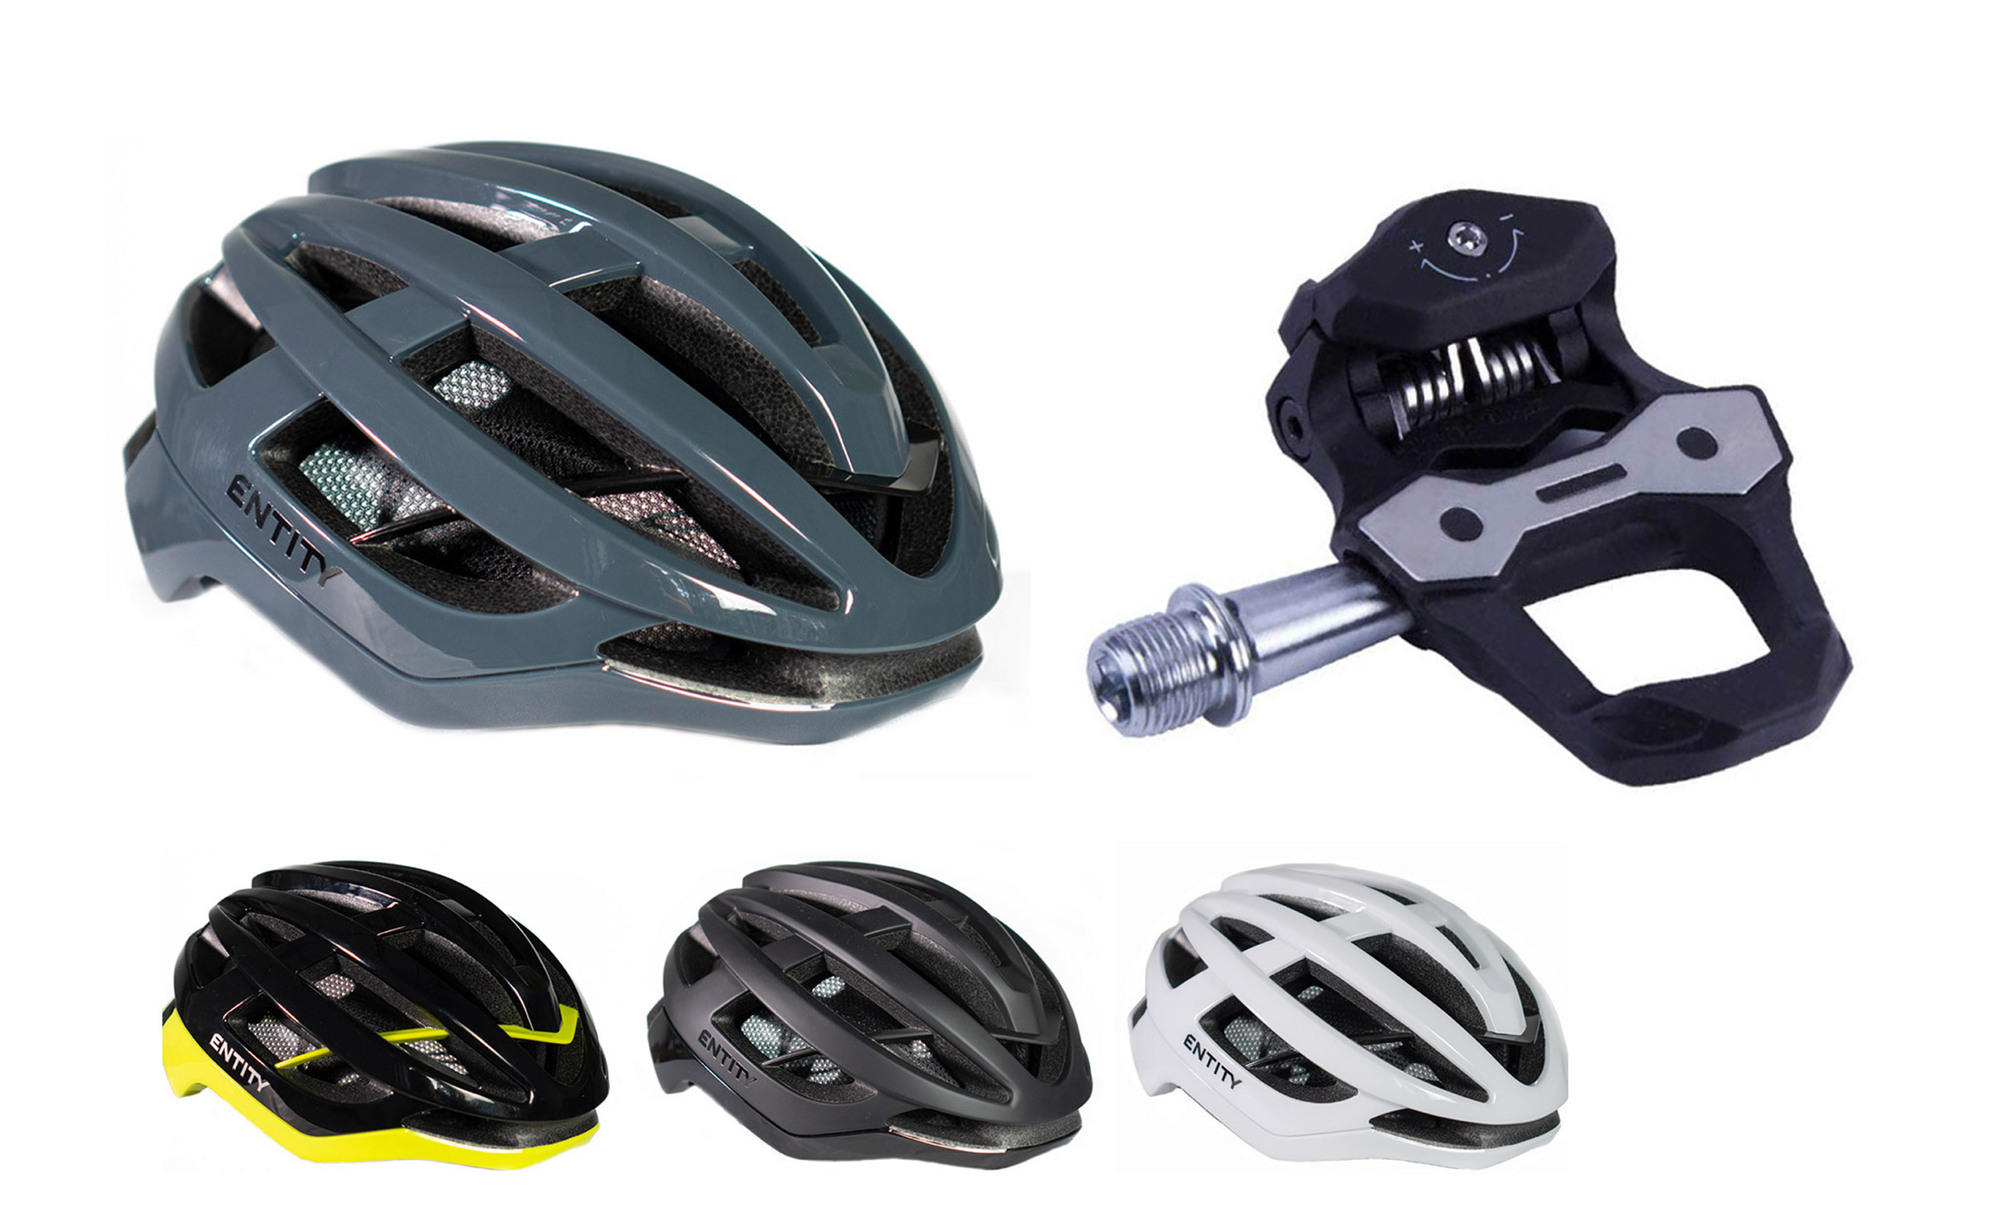 Entity RH30 Road Helmet + Entity RP15 Carbon Road Pedals Bundle